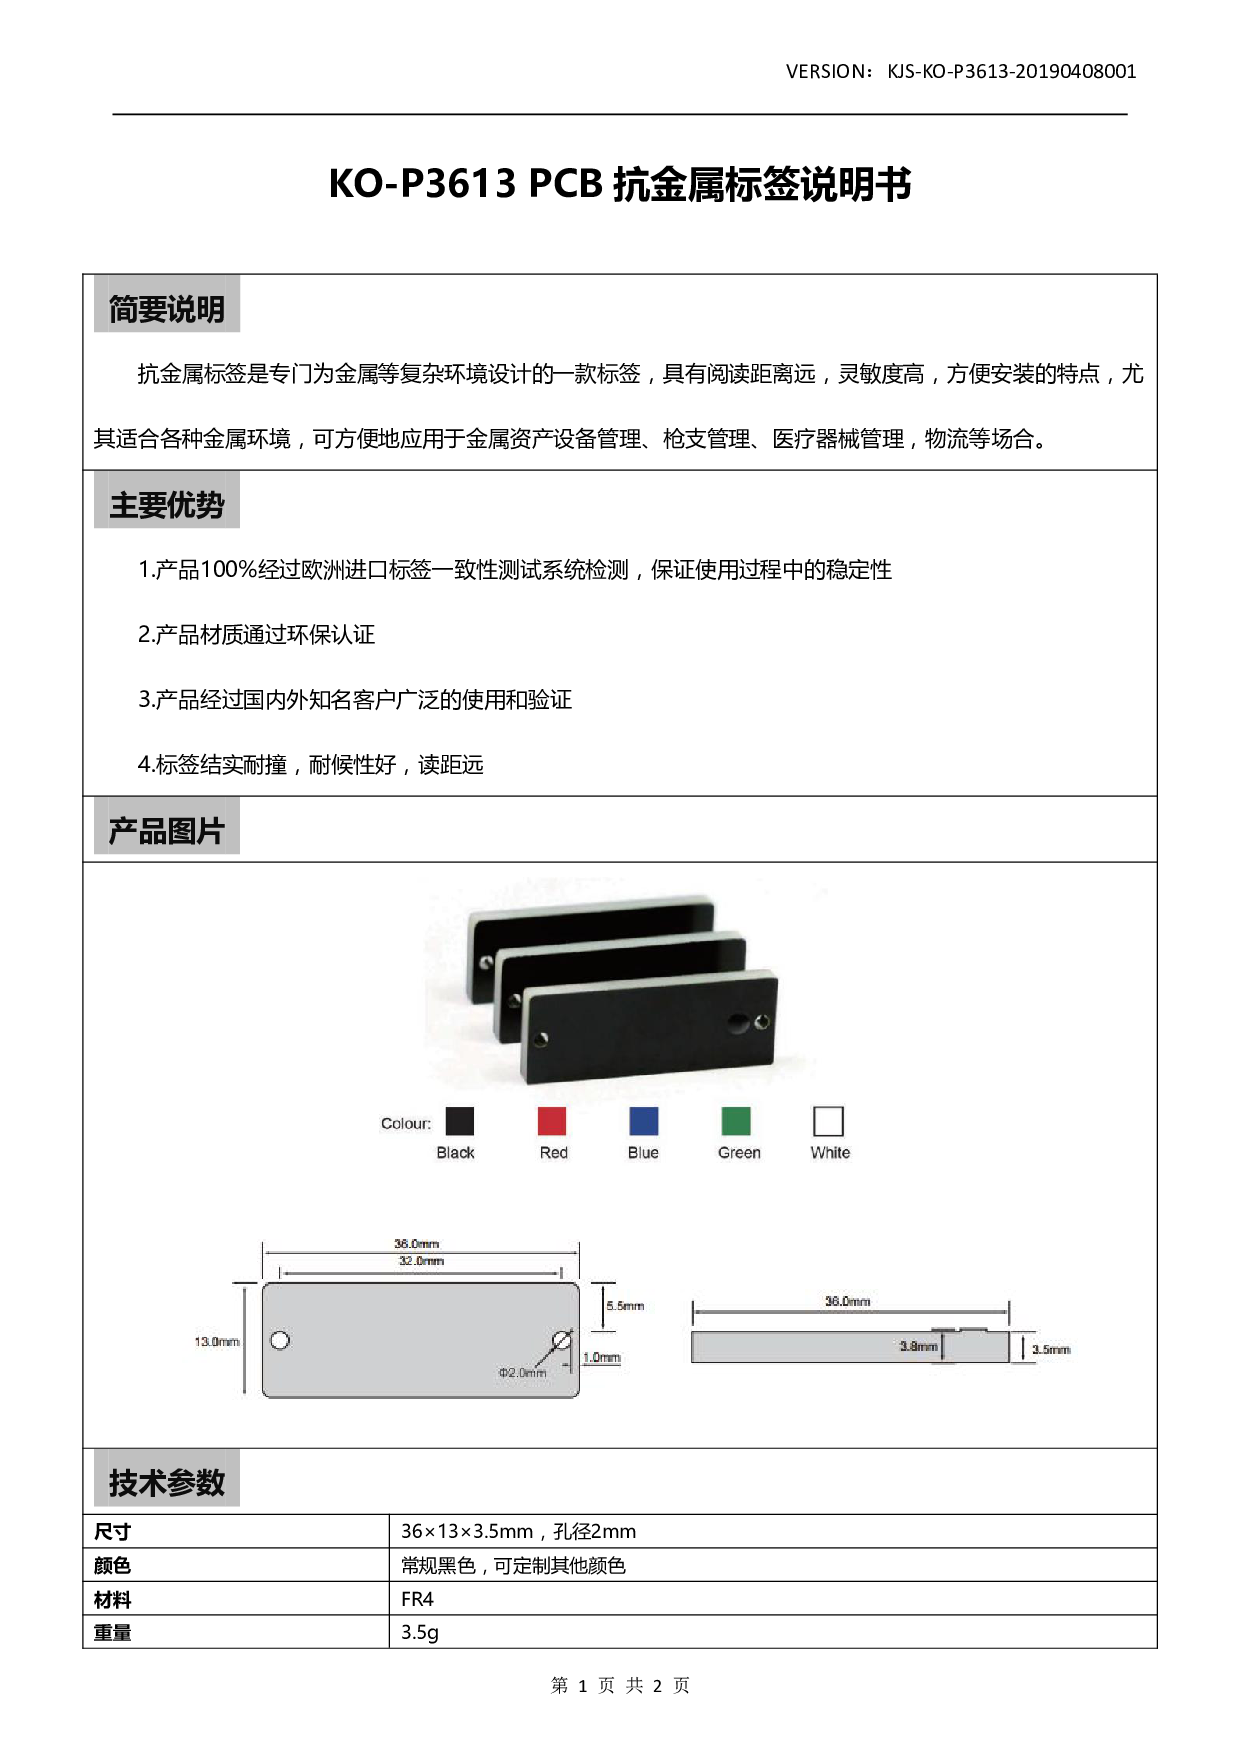 KO-P3613 PCB 抗金属标签图片